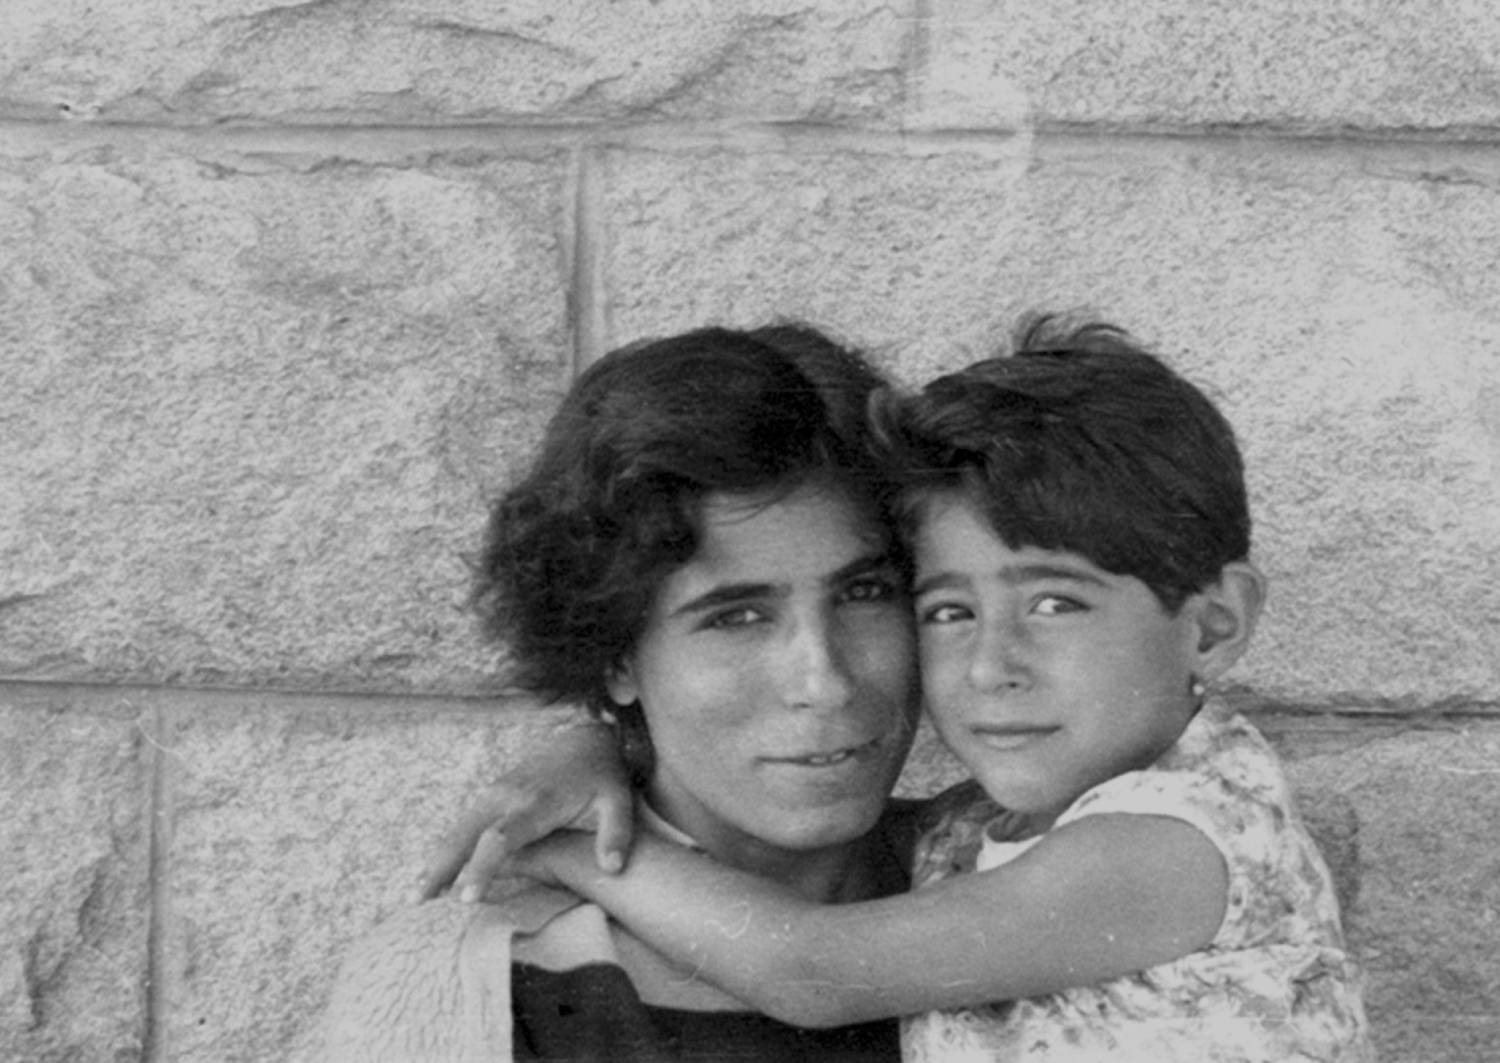 Anneanne mit Cans Mutter, um 1955